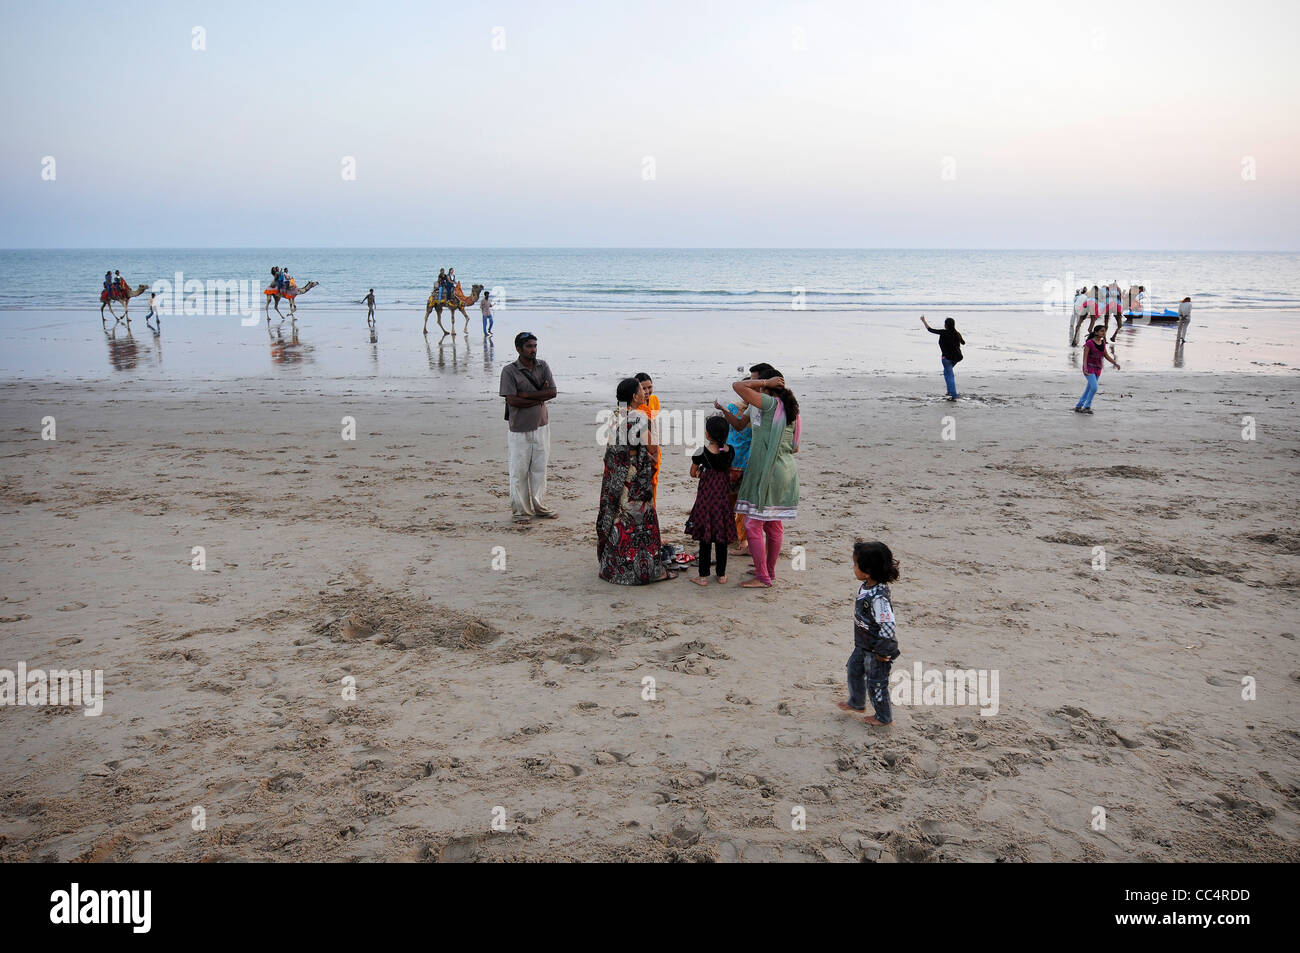 La plage de Mandvi, Inde Banque D'Images